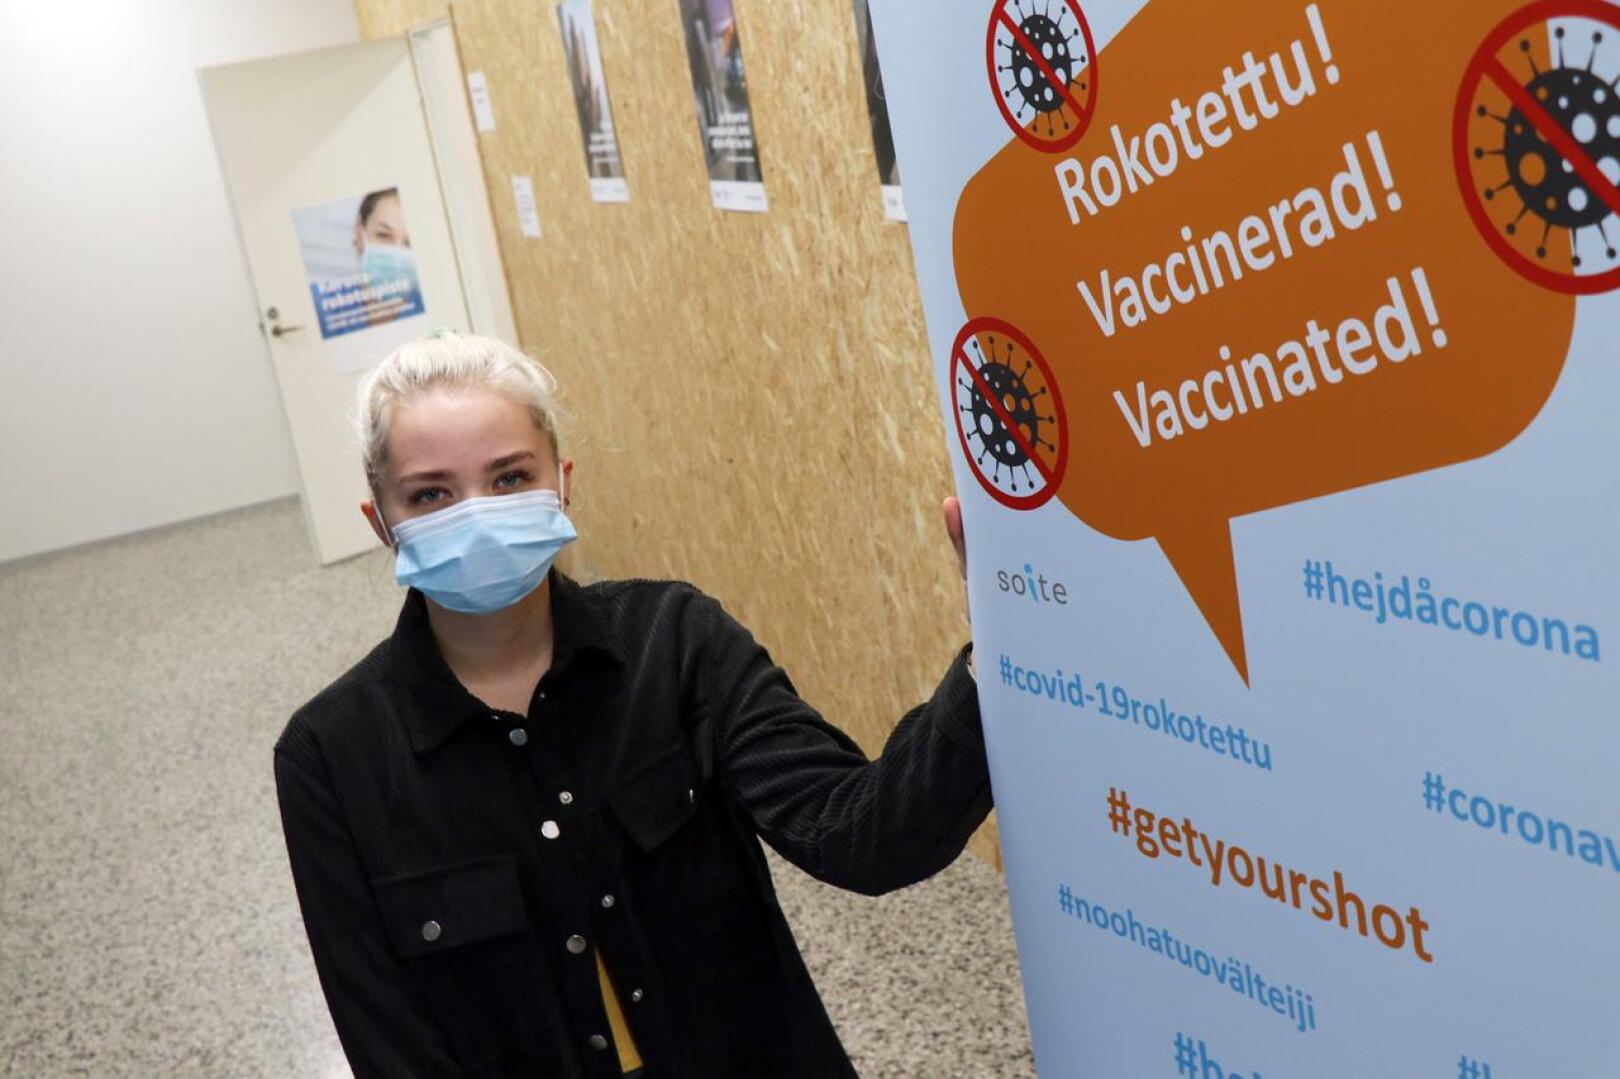 Iina Koivumäki kävi hakemassa ensimmäisen koronarokotteensa tiistaina Passelin rokotuskeskuksesta ilman ajanvarausta.